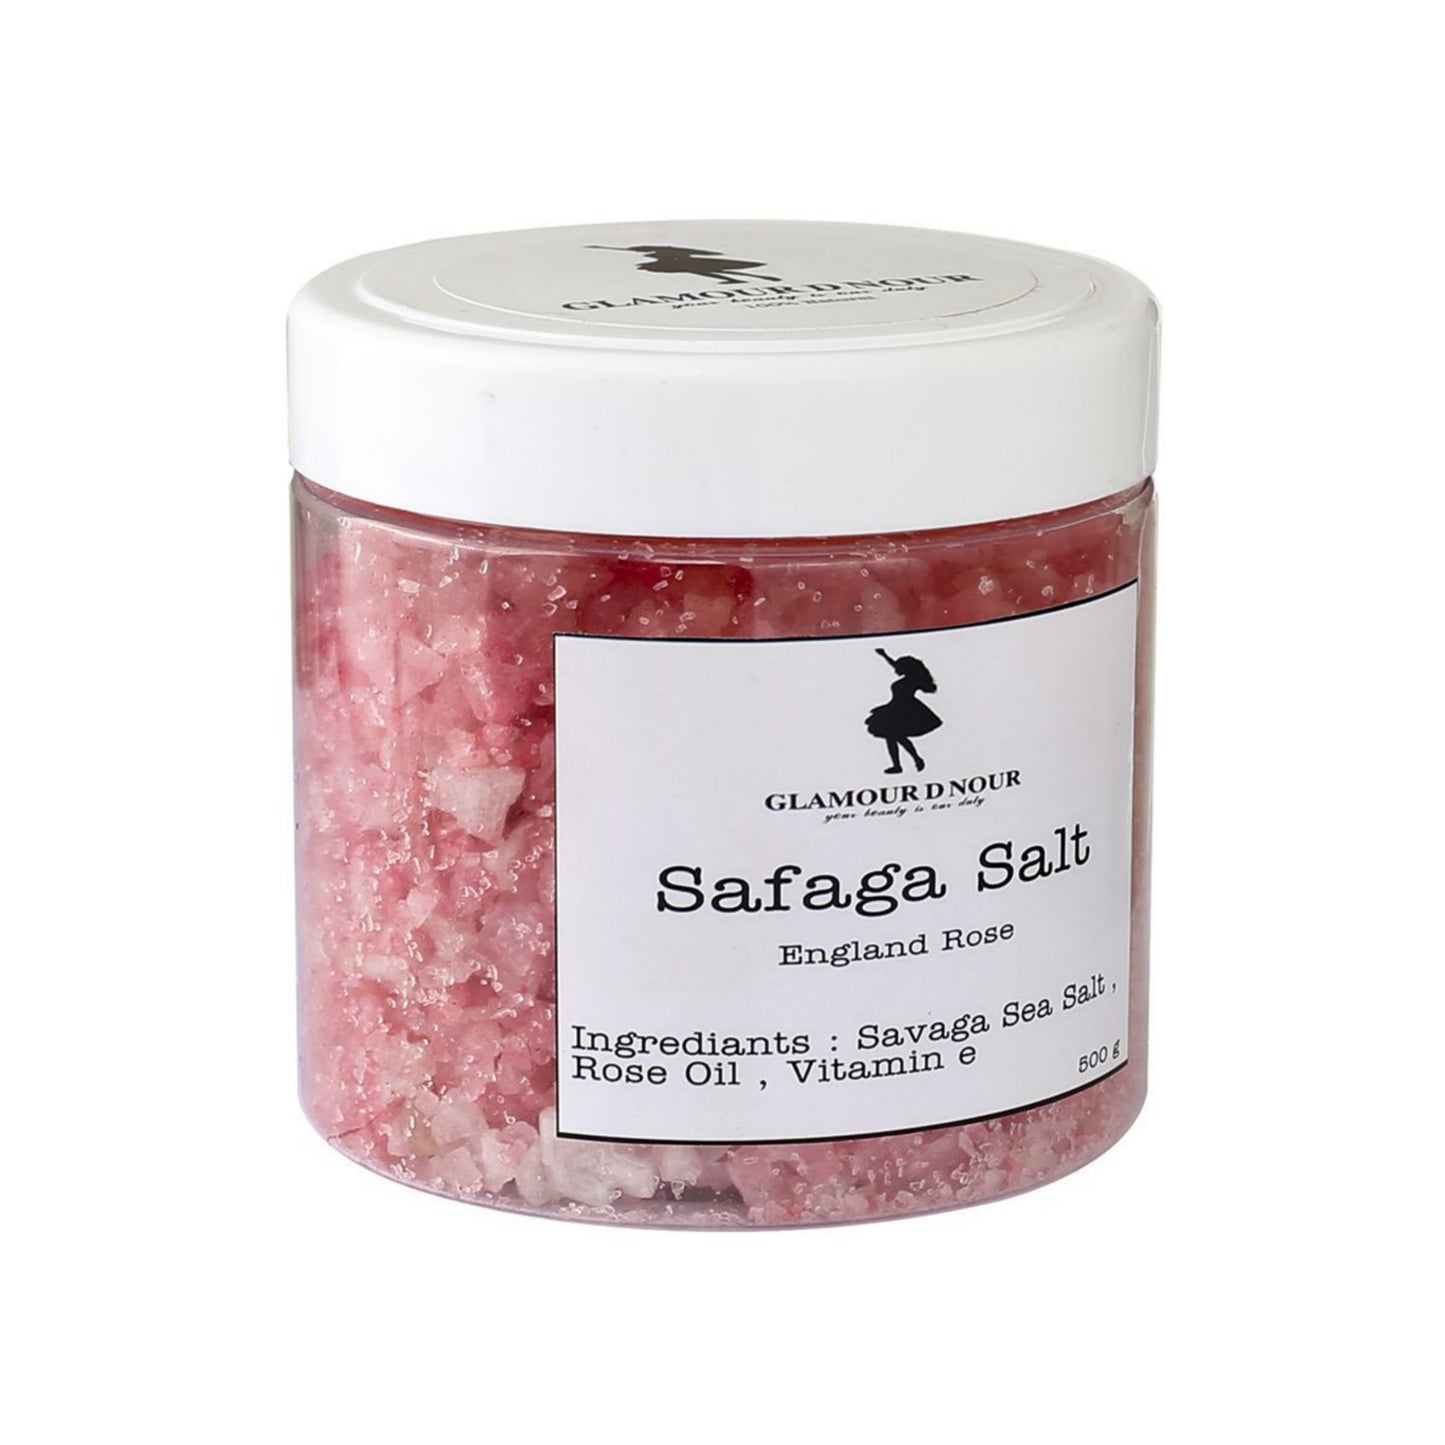 Rose Safaga Salt